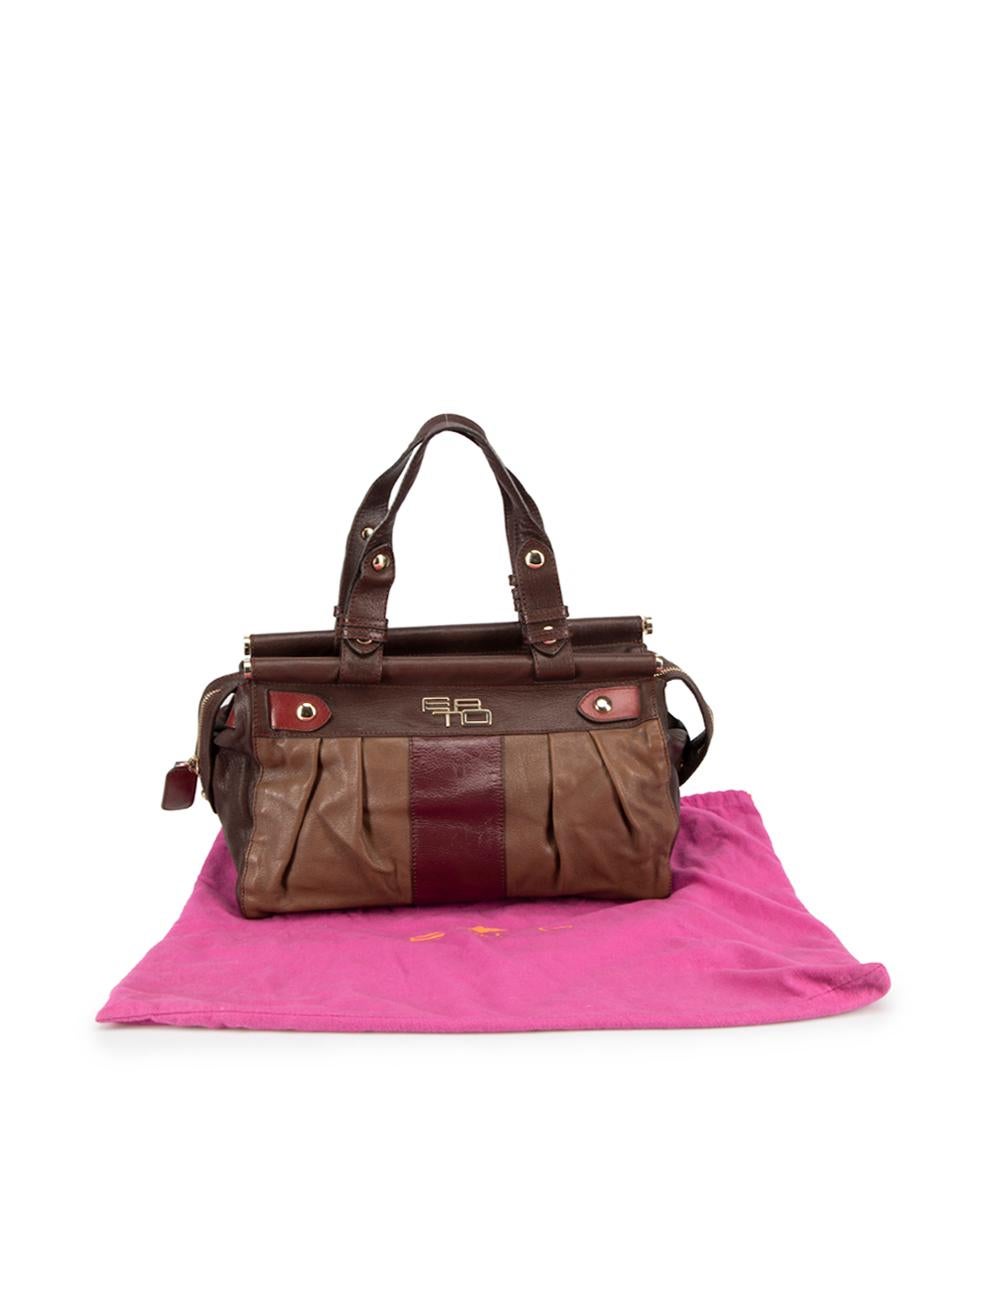 Etro Brown Leather Shoulder Bag For Sale 3